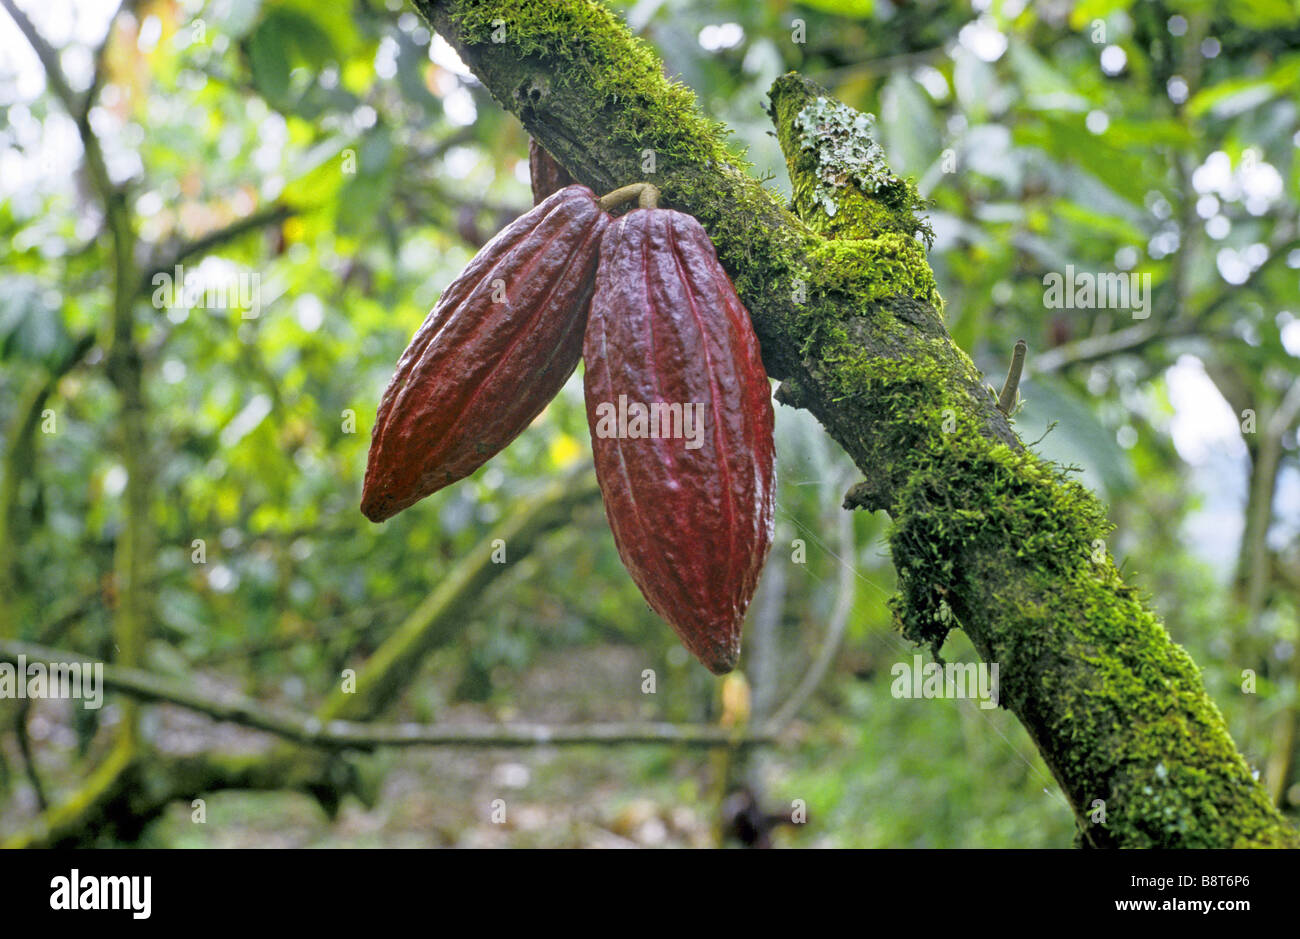 chocolate, cocoa tree (Theobroma cacao), fruits, Indonesia Stock Photo